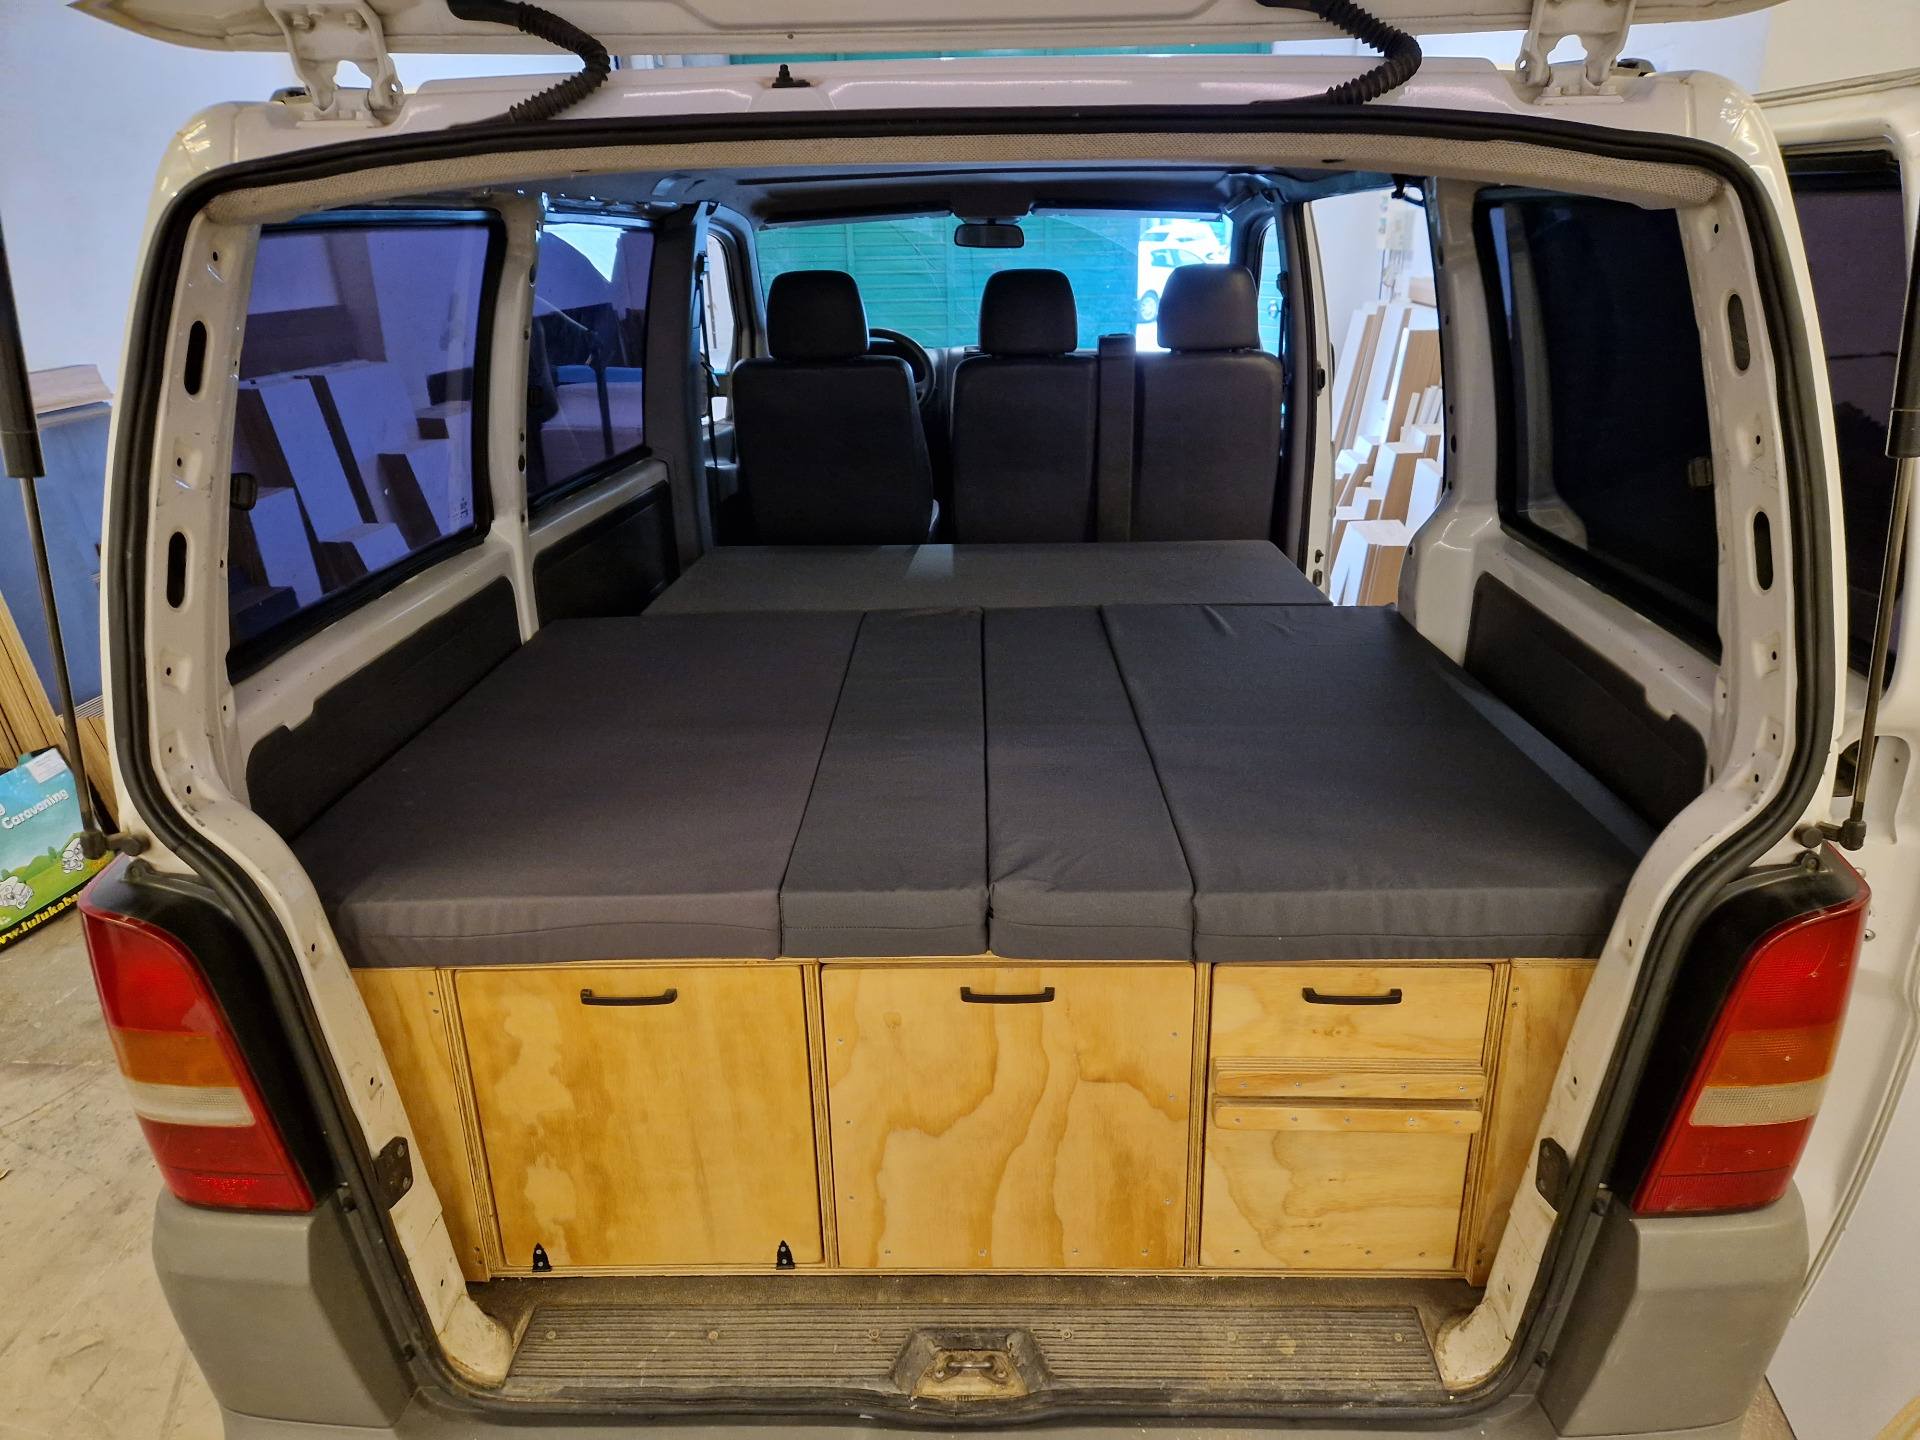 ¿Cuál es la durabilidad y resistencia de los muebles camper diseñados para esta furgoneta?